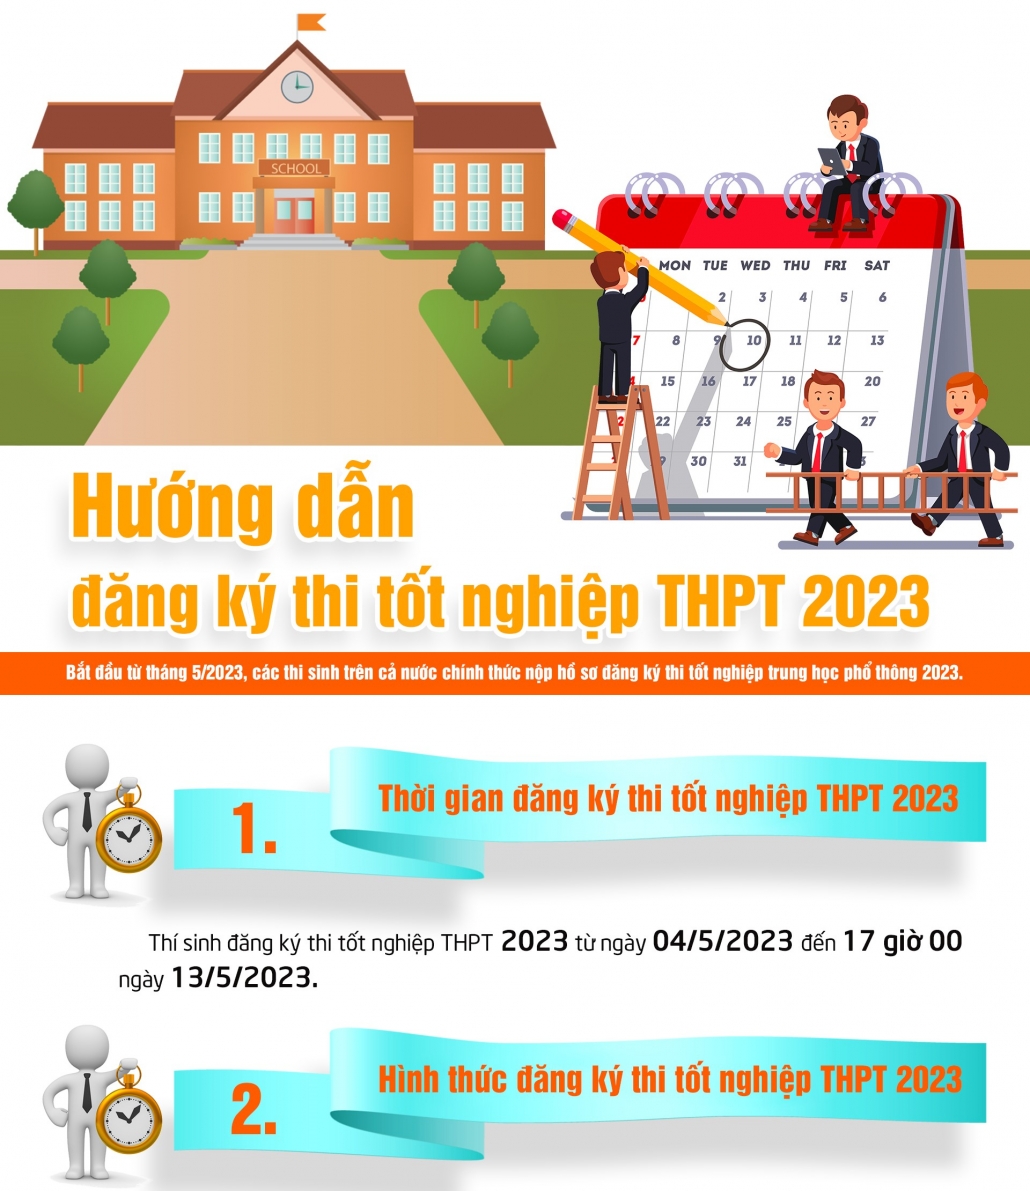 [Infographic] Hướng dẫn đăng ký thi tốt nghiệp THPT 2023